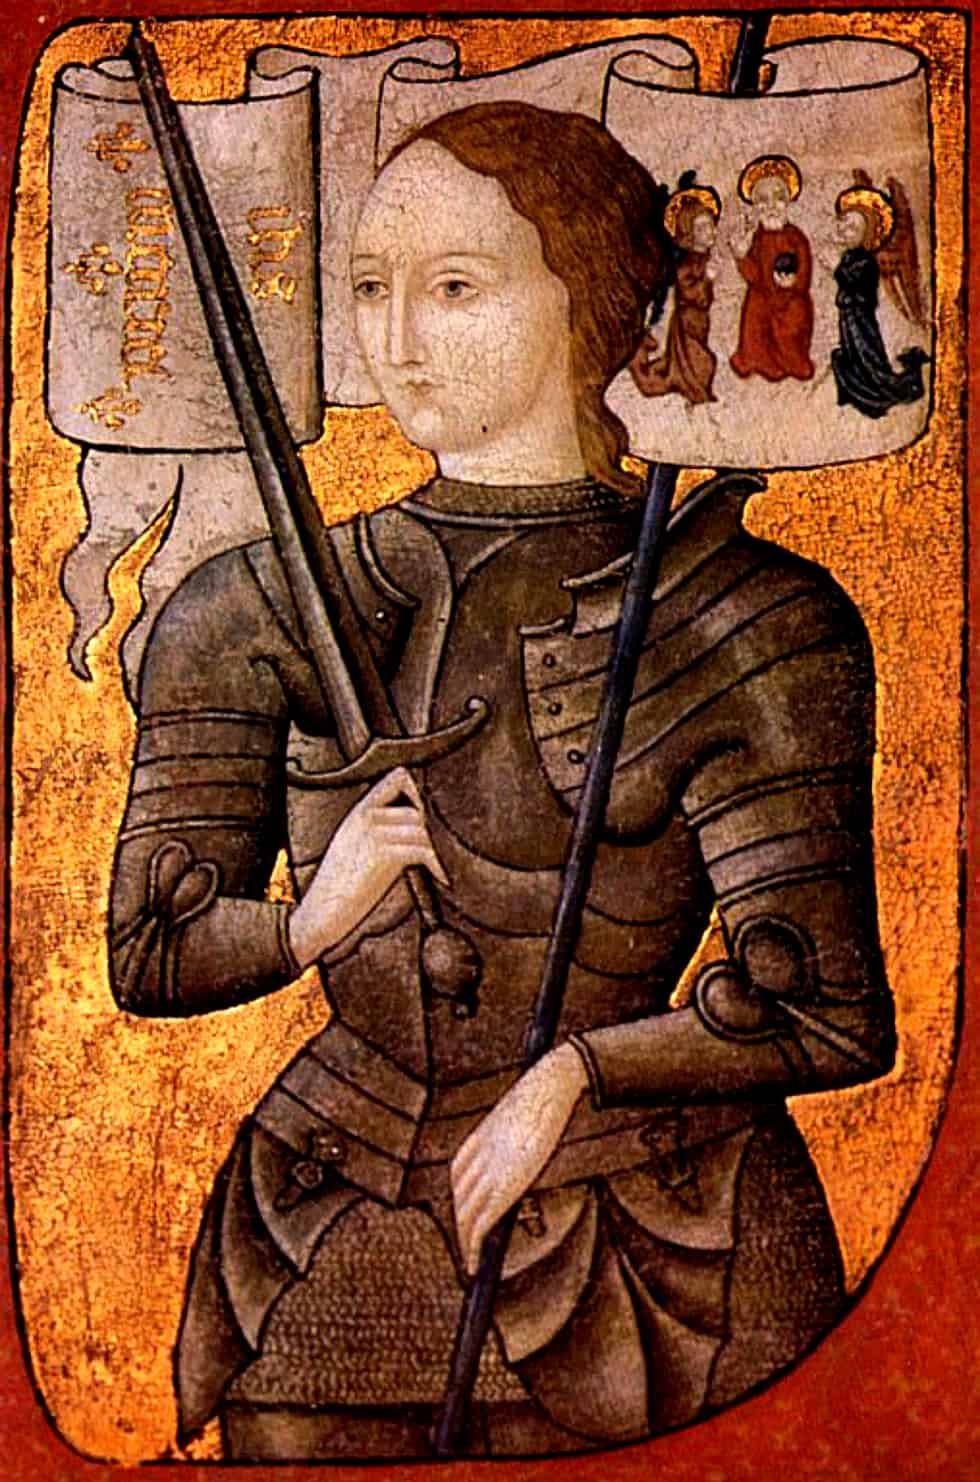 https://commons.wikimedia.org/wiki/File:Joan_of_Arc_miniature_graded.jpg